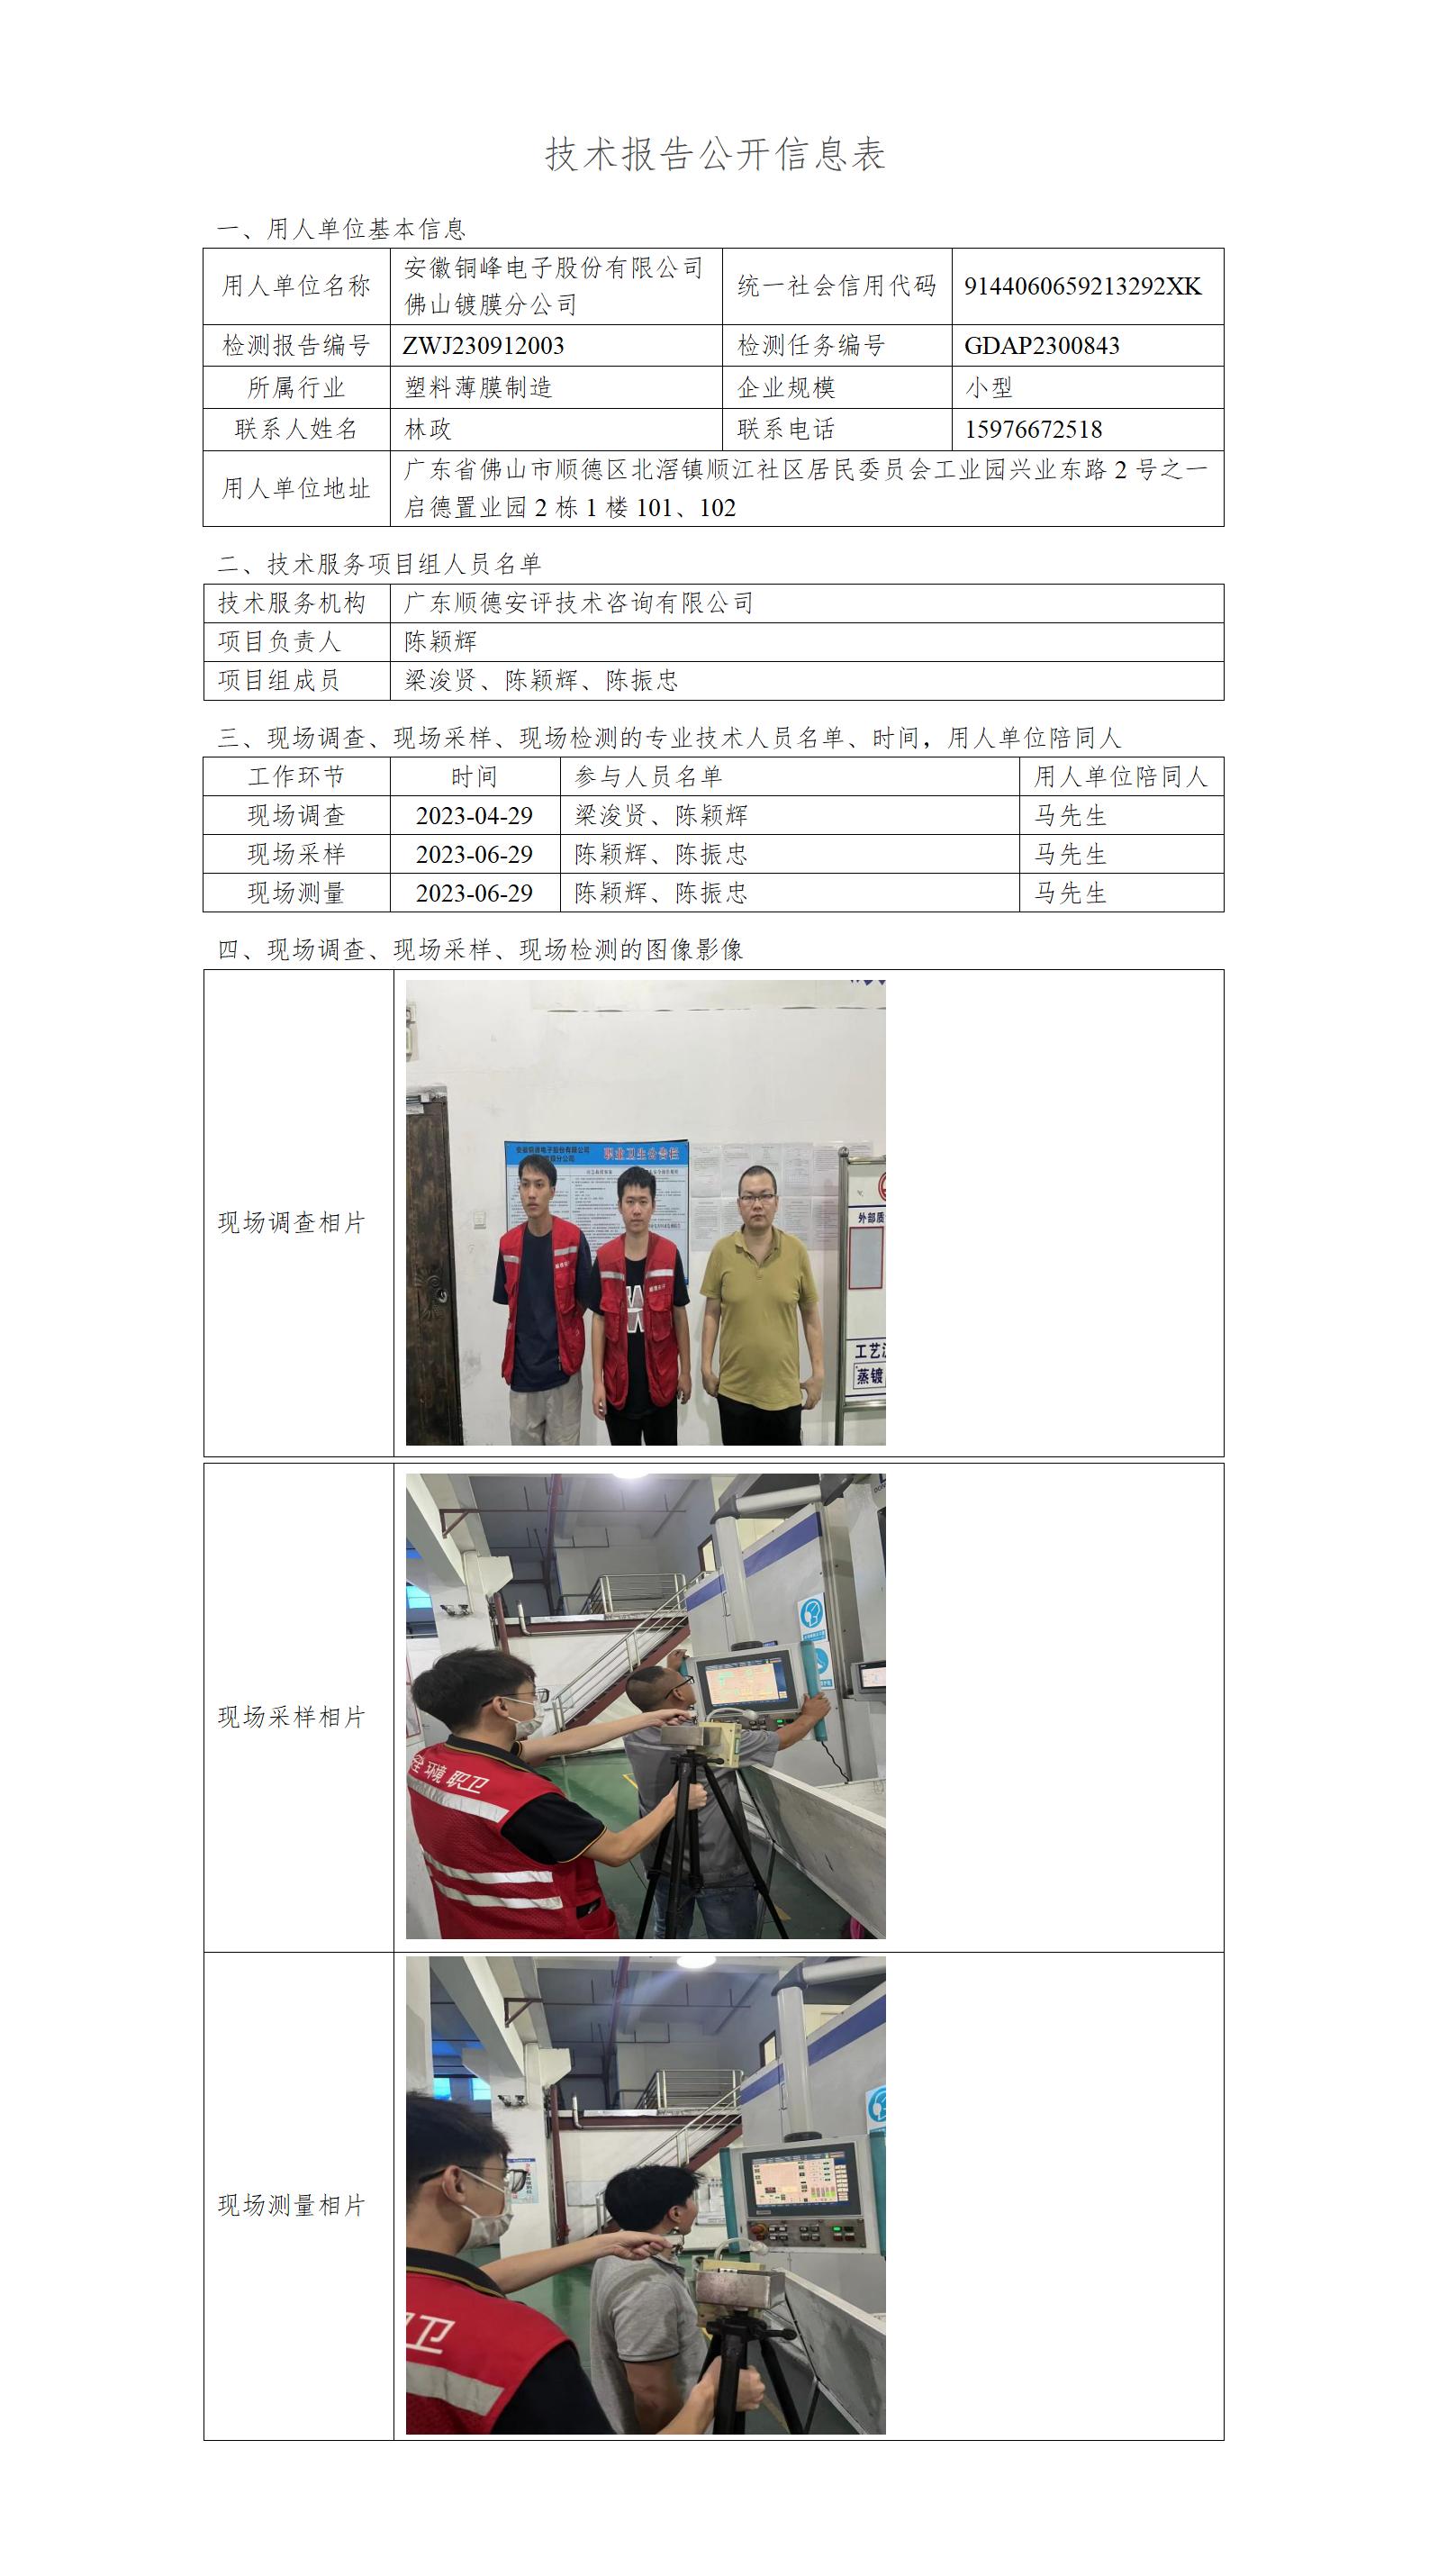 安徽铜峰电子股份有限公司佛山镀膜分公司-2023-技术报告公开信息表_01.jpg